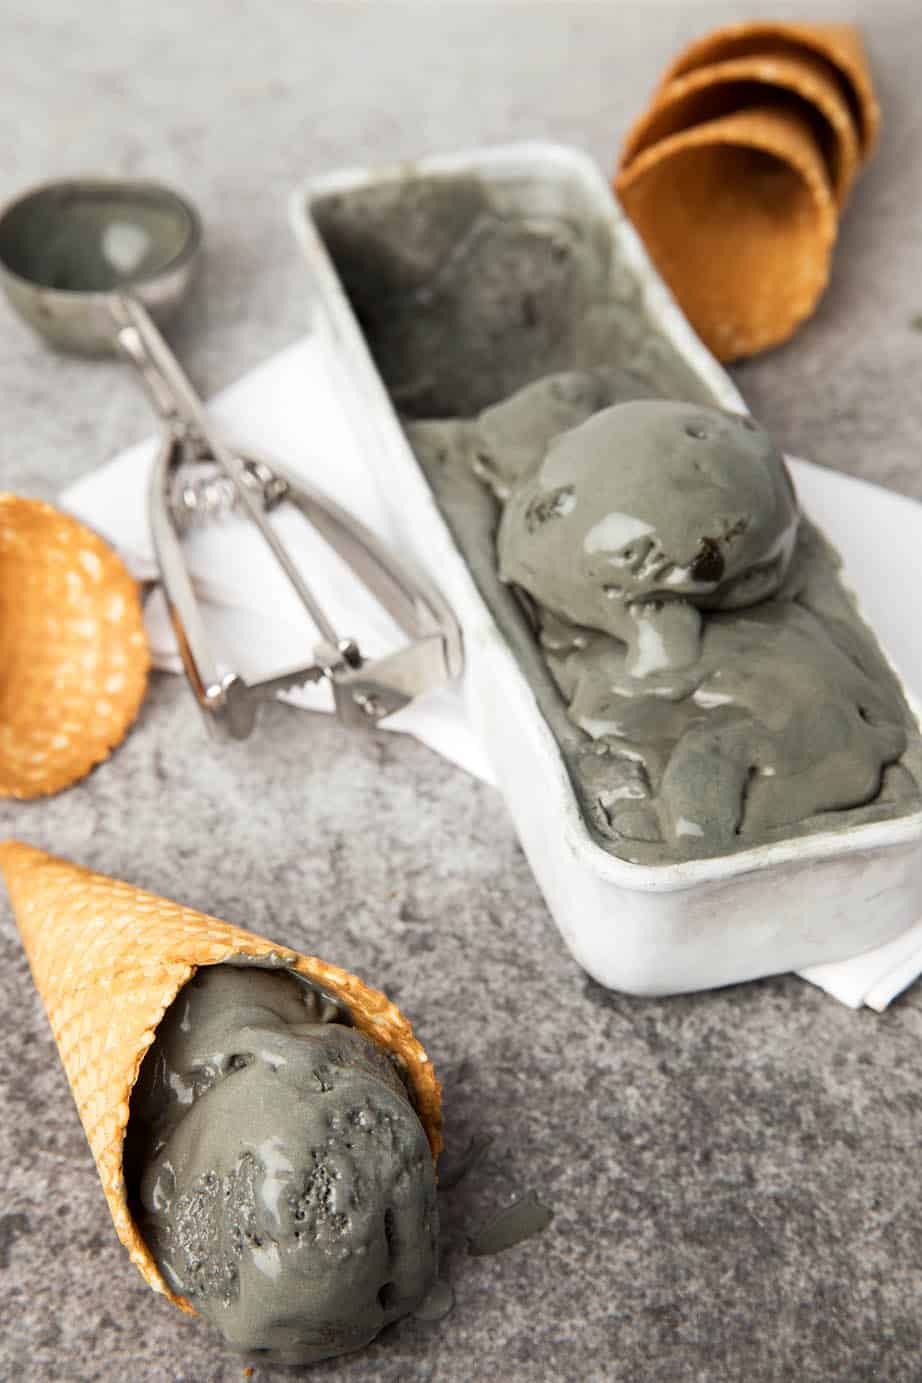 Ice cream cones with licorice ice cream on a dark background